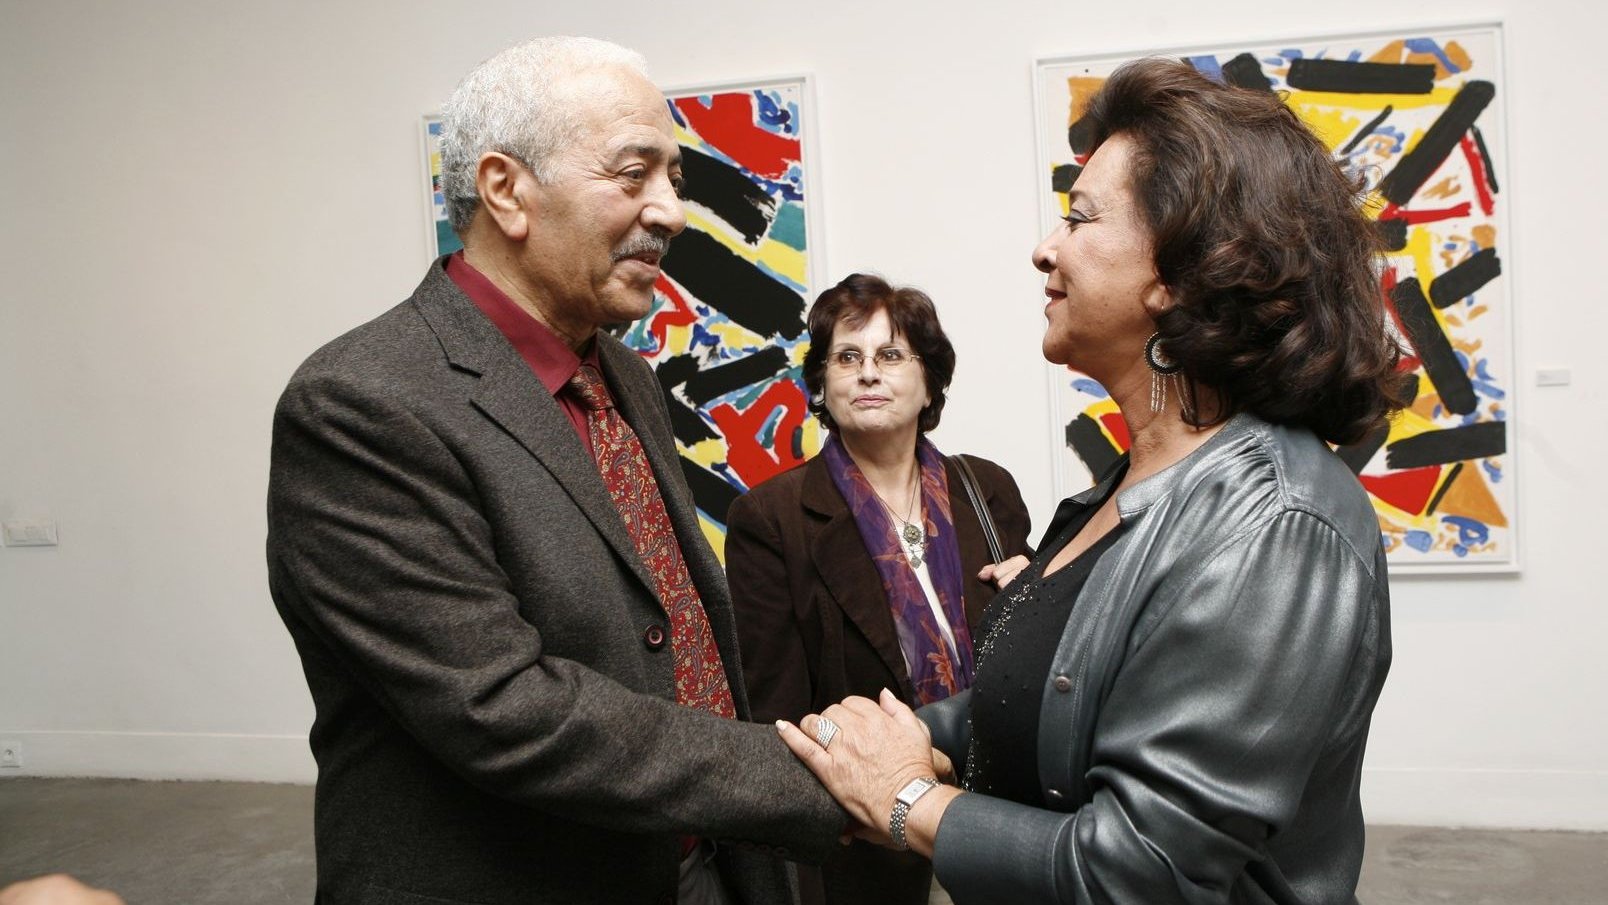 محمد شبعة في حديث خاص مع عائشة عمور صاحبة الرواق سنة 2010
